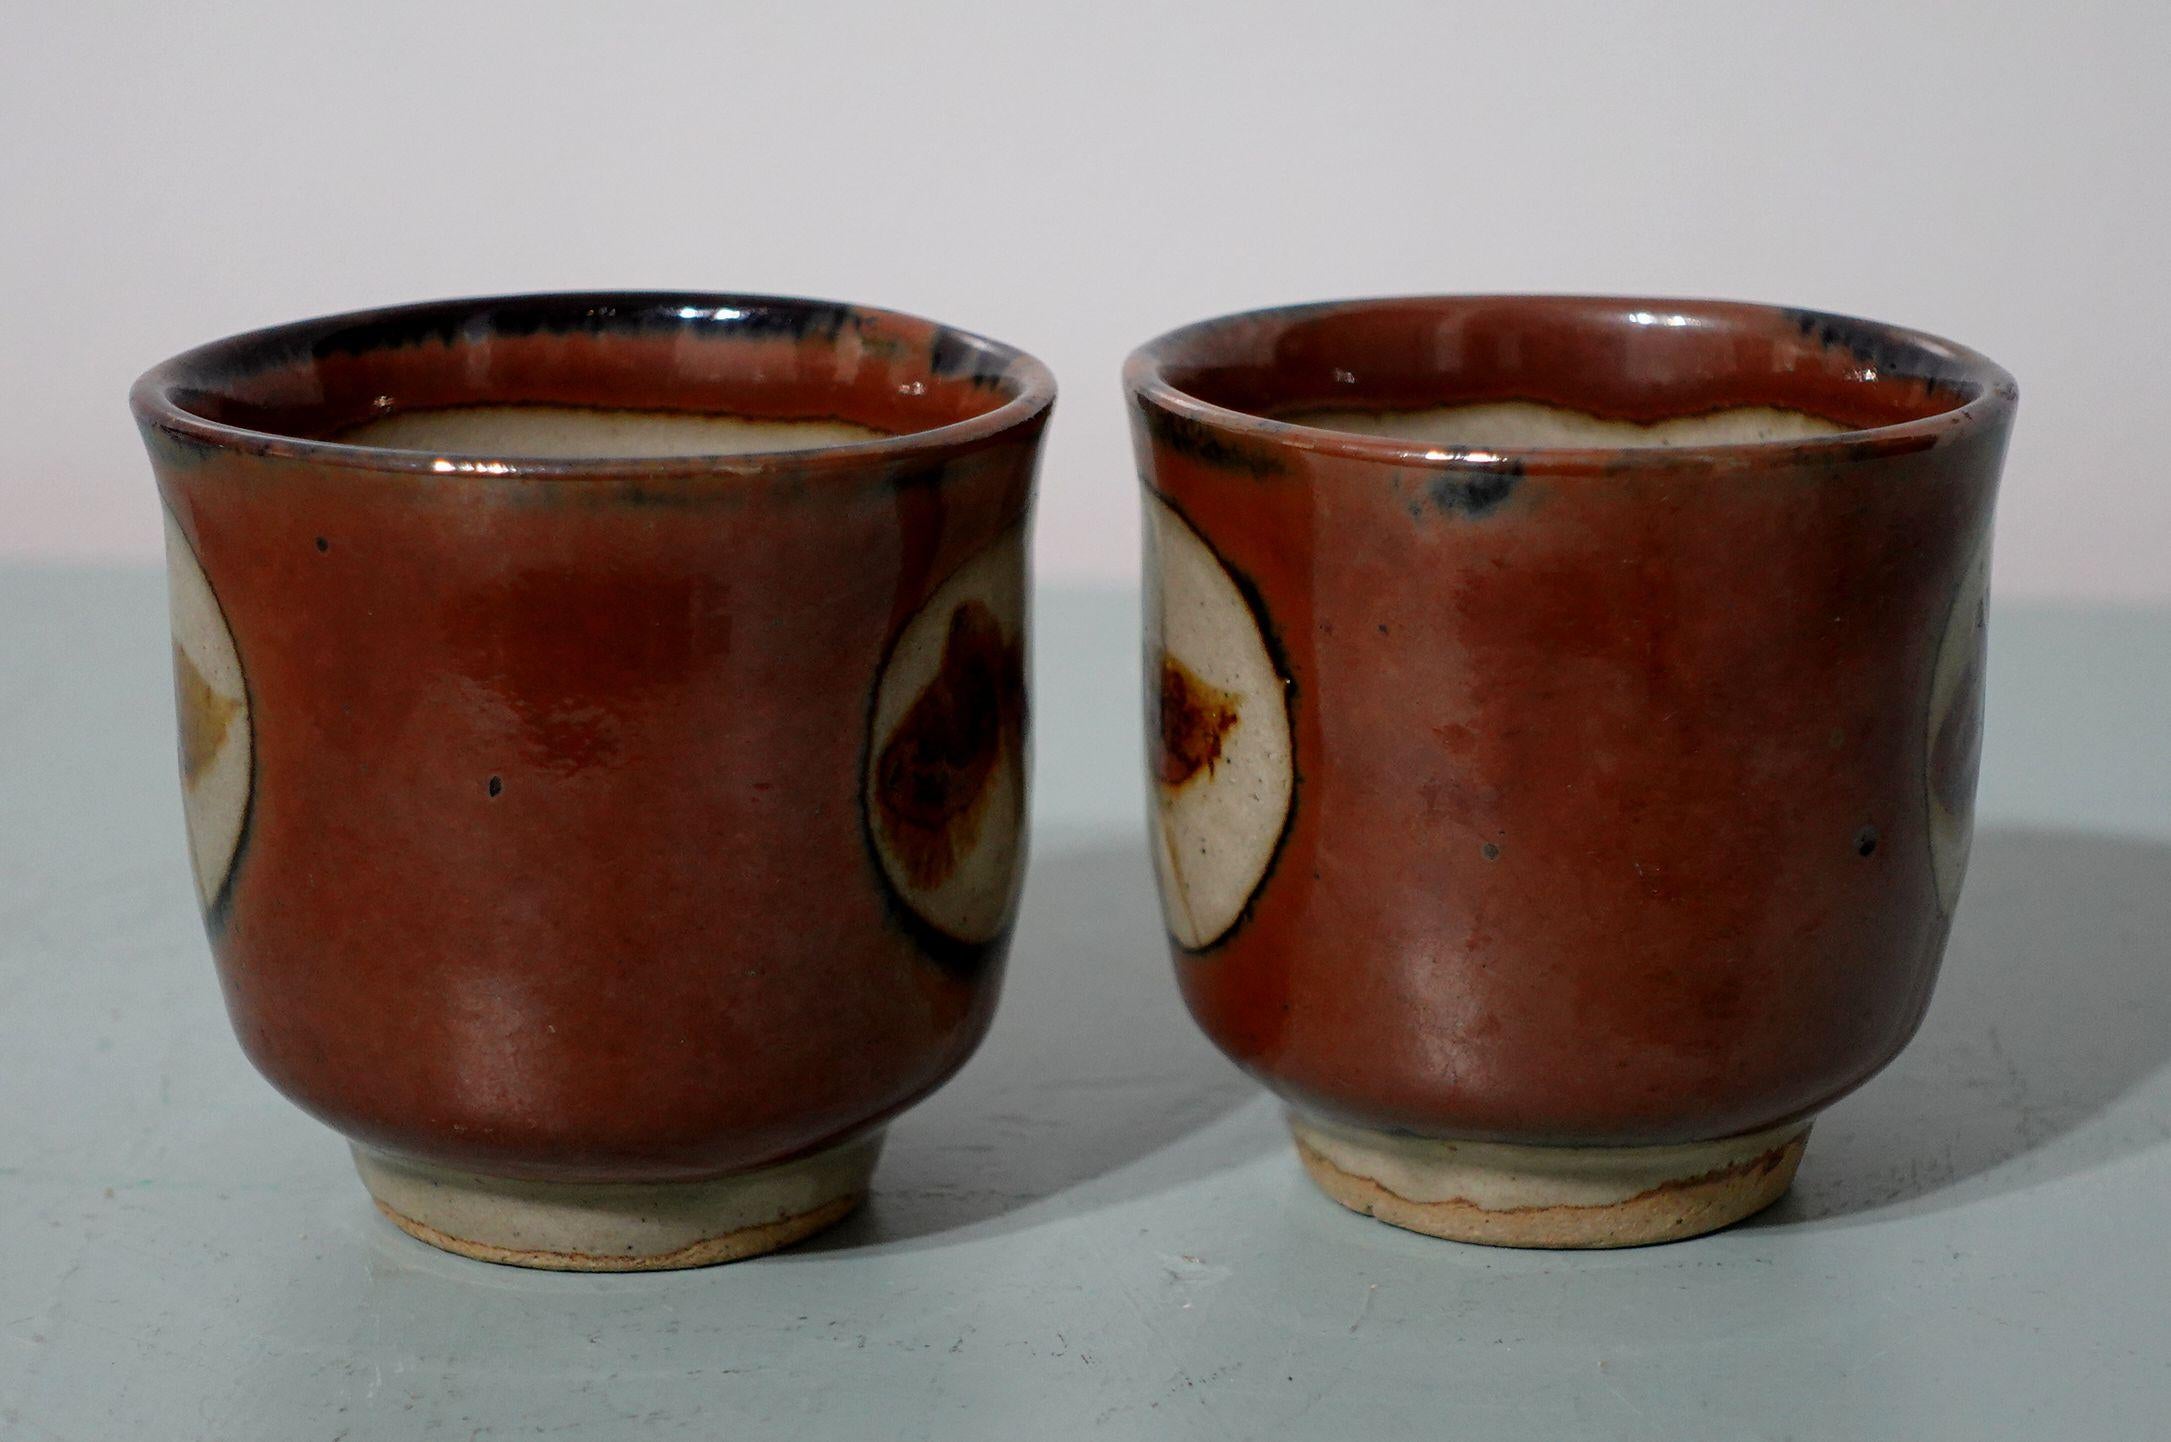 mashiko yaki pottery